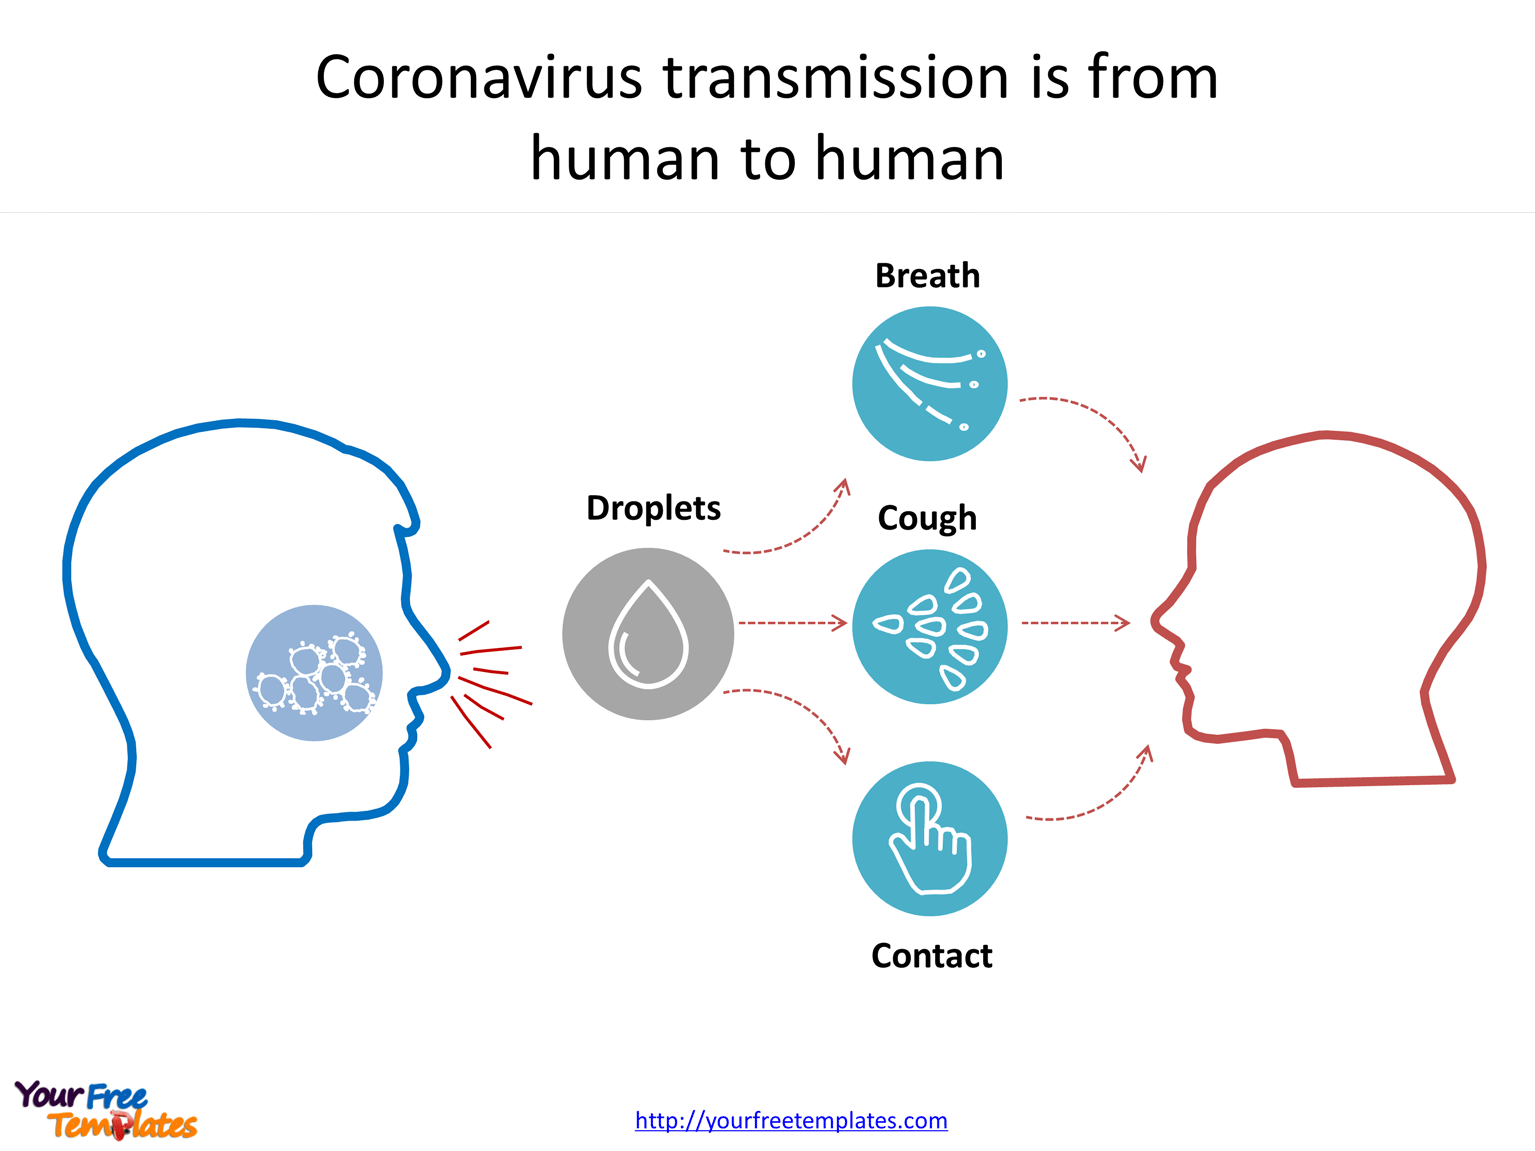 Coronavirus animals’ infographic icons